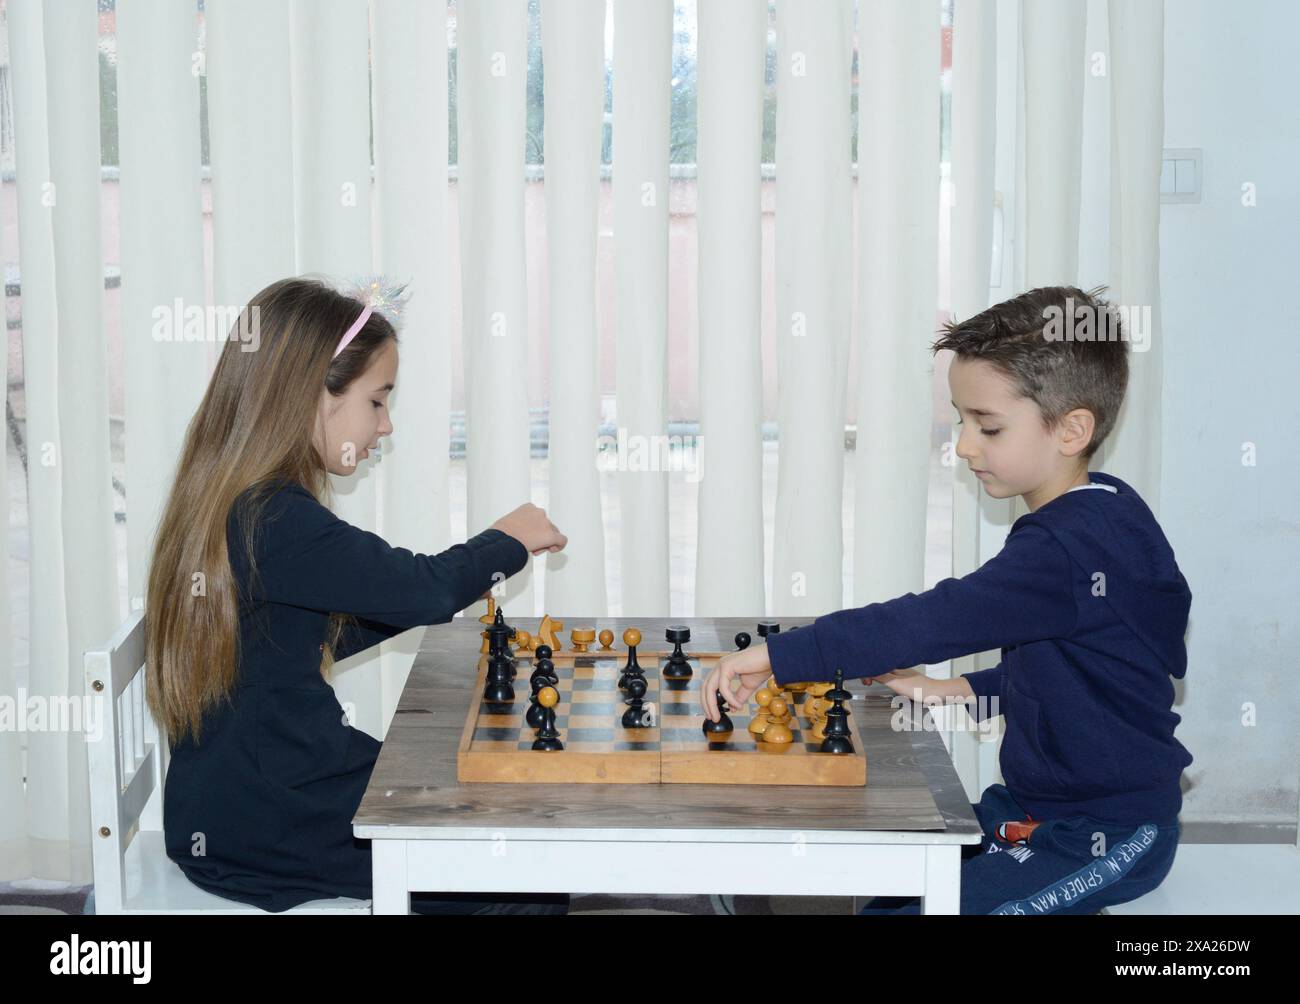 Deux enfants jouant aux échecs à une table avec un rideau en arrière-plan Banque D'Images